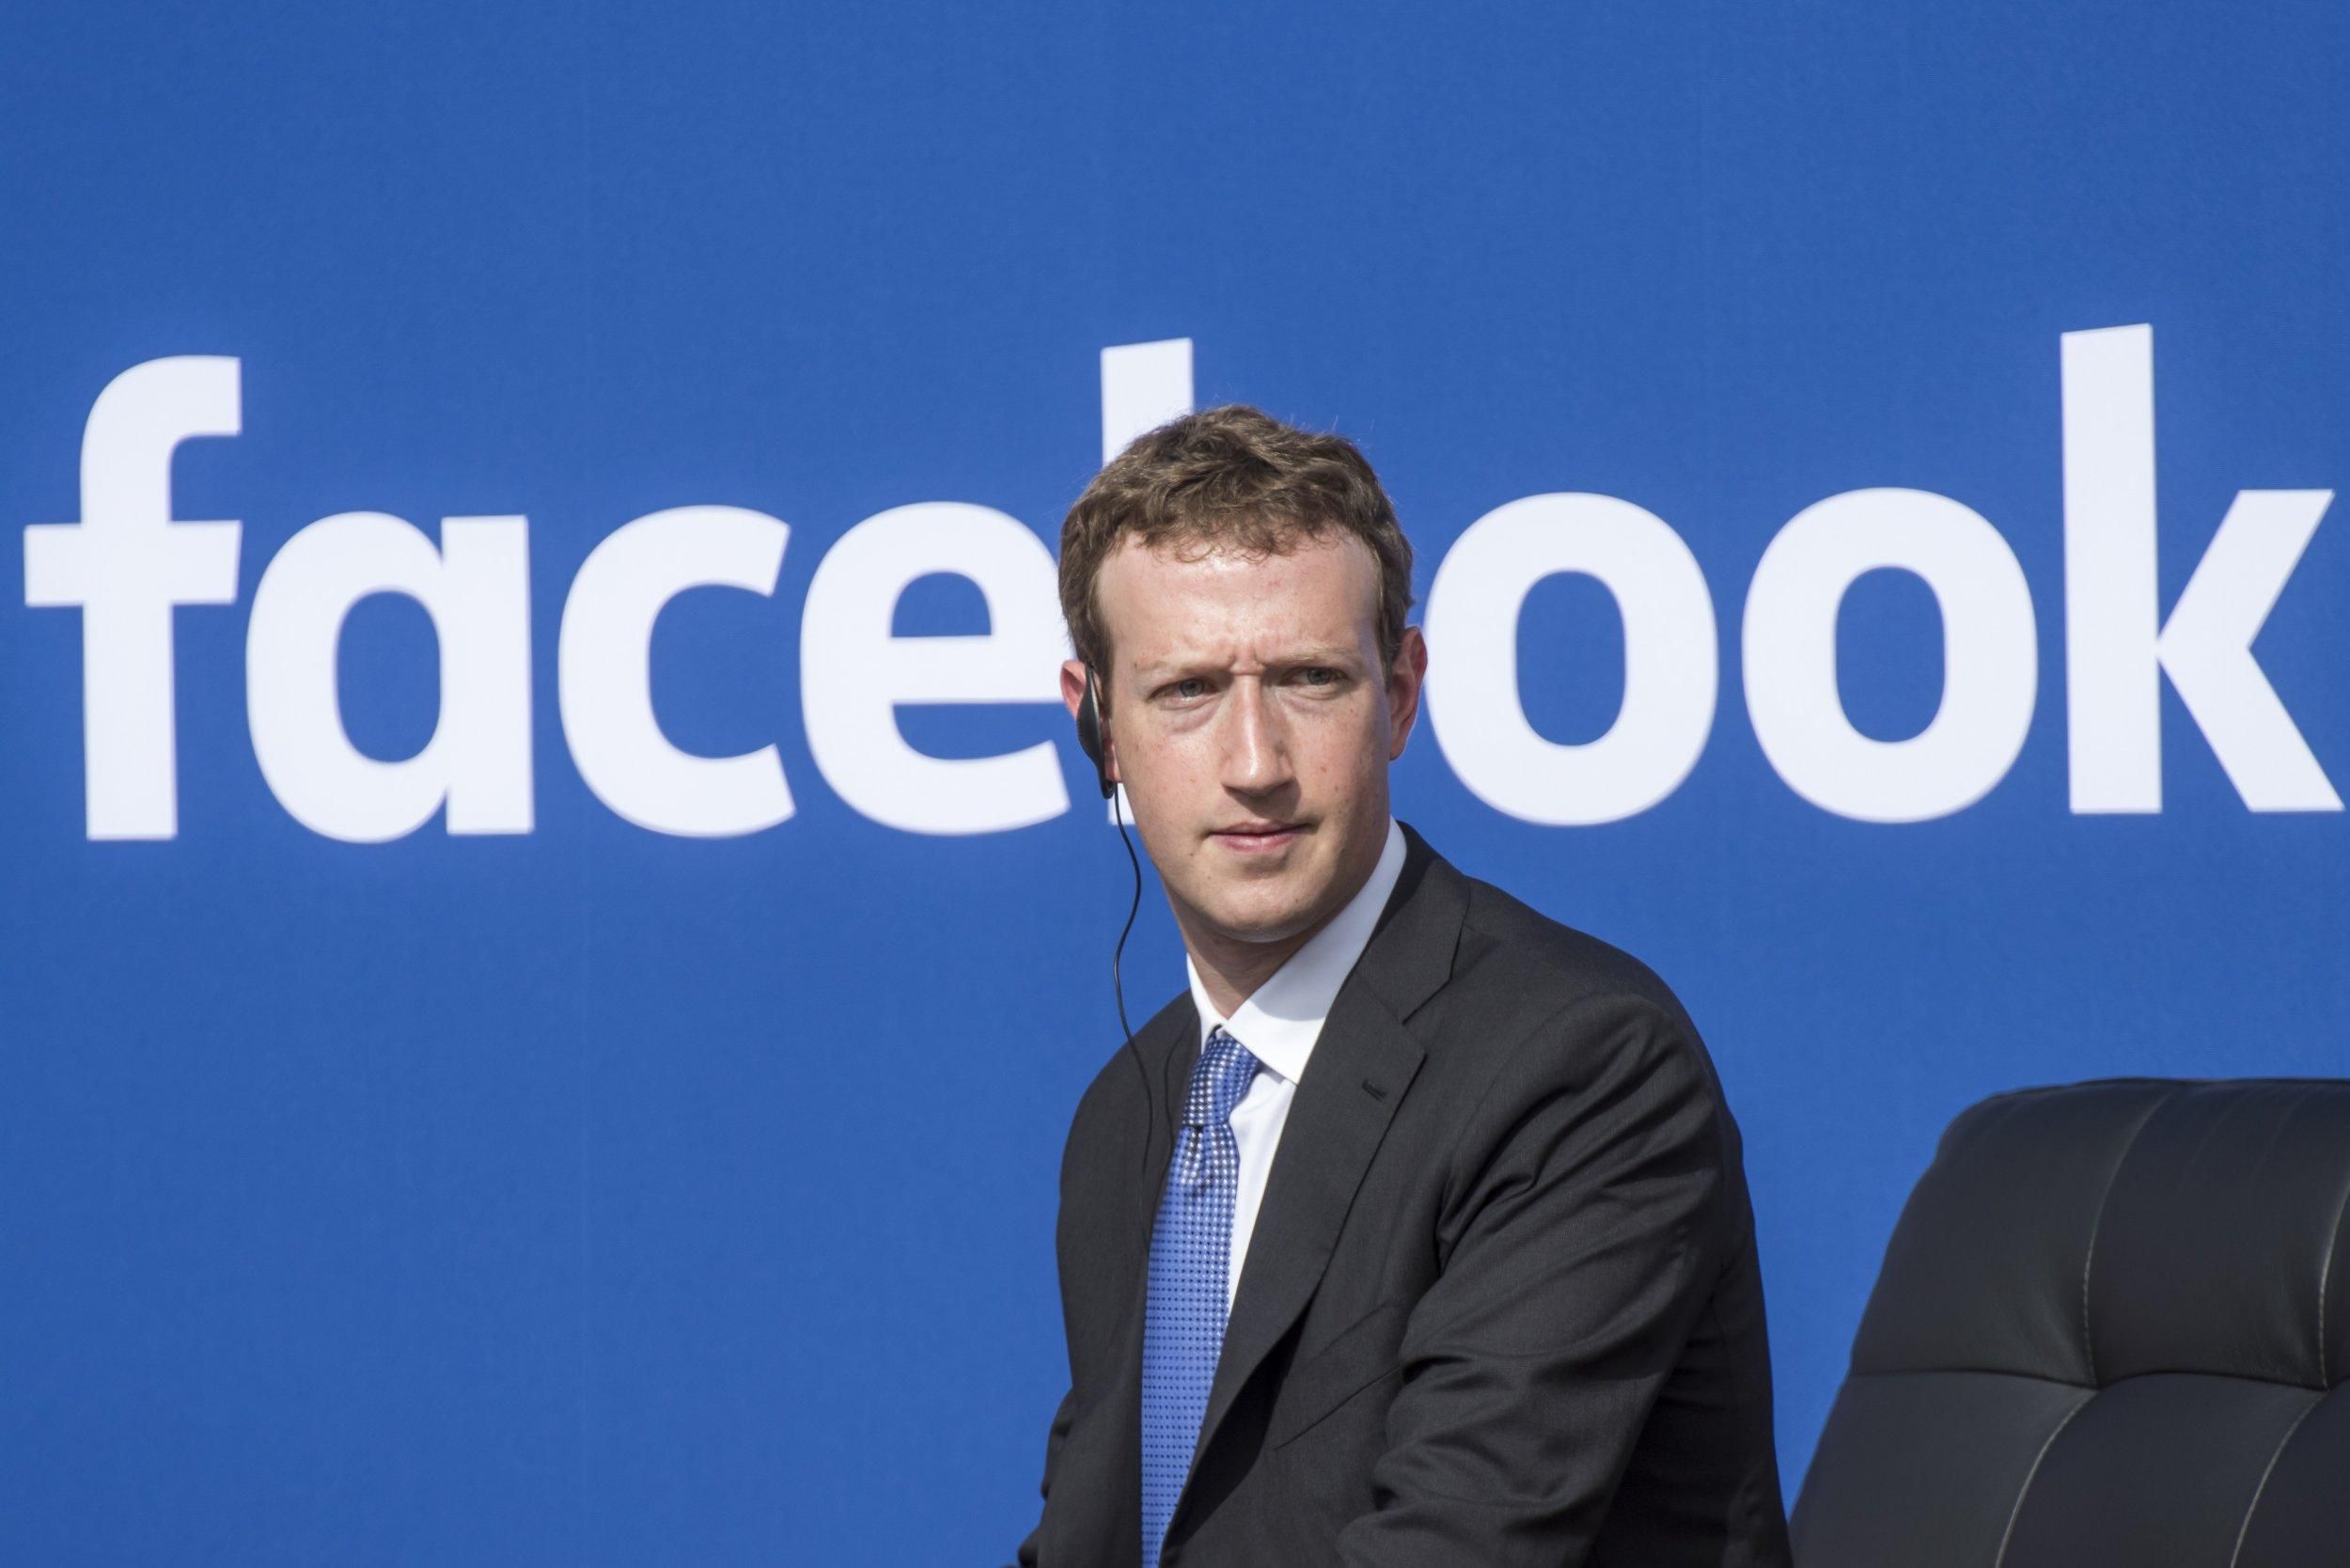 Вместо Facebook: каким бизнесом мог заниматься Марк Цукерберг - Финансы